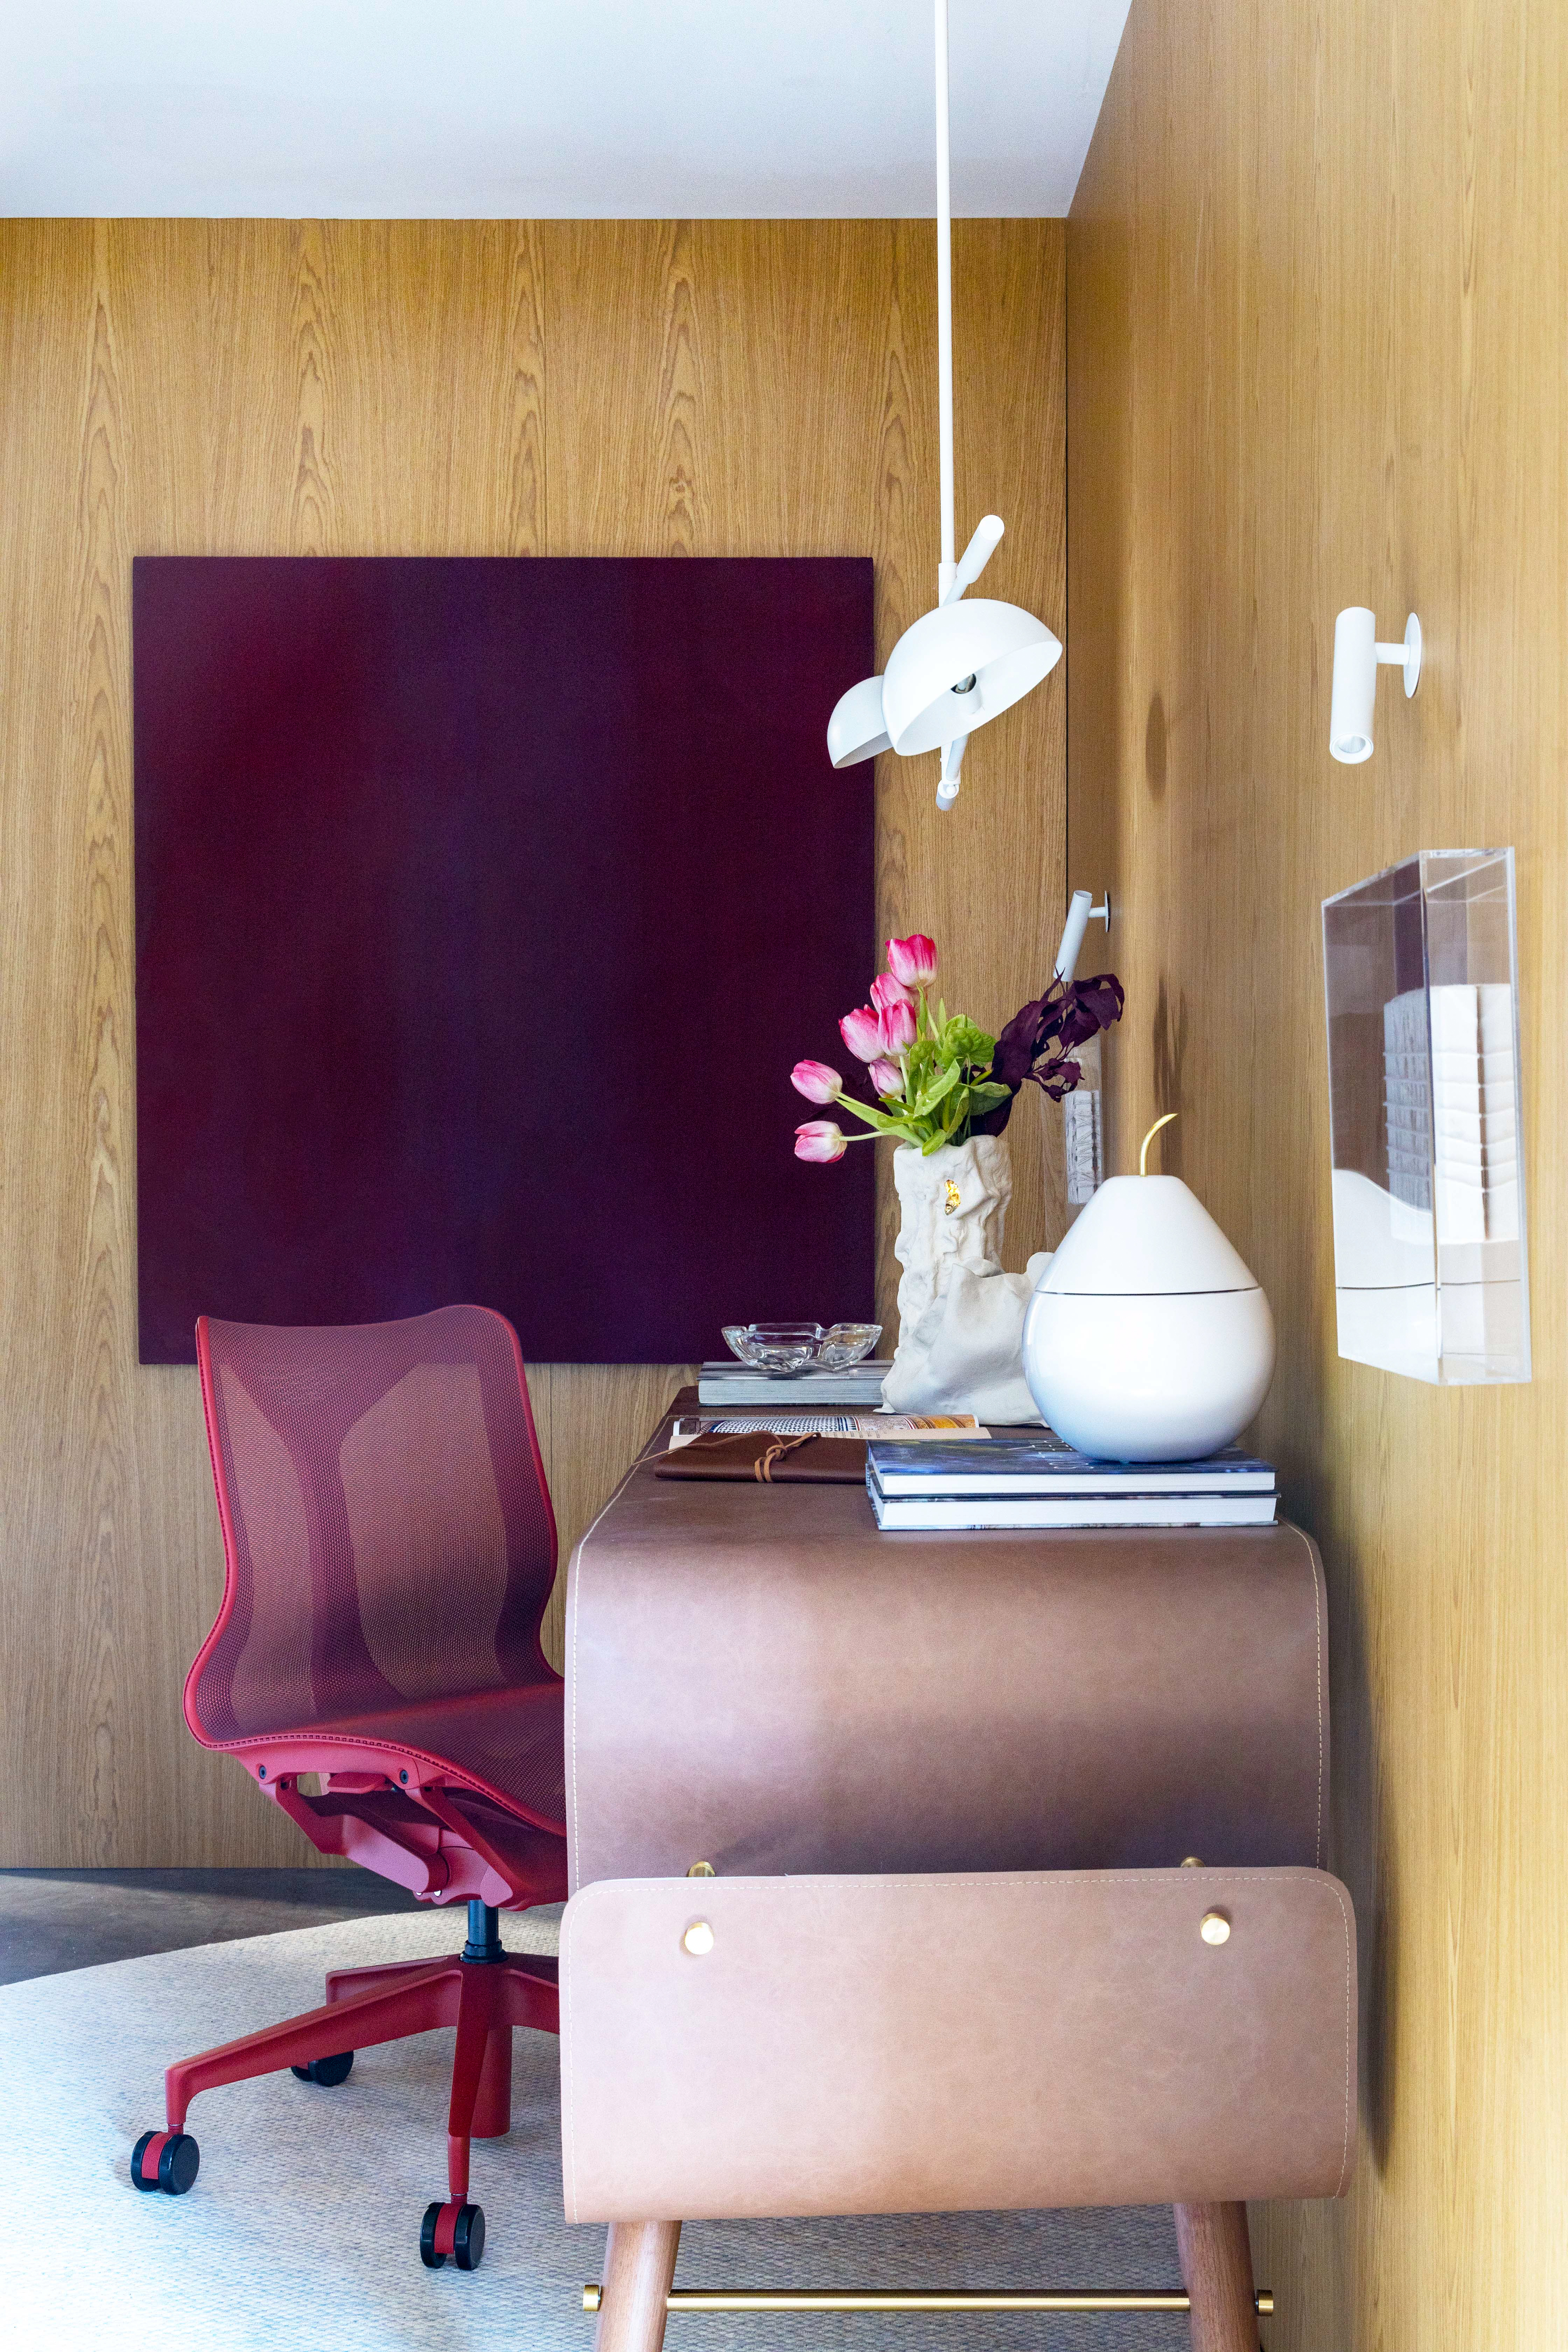 CASACOR Paraná: home office tem abertura no piso e peças vintage. Projeto de Katleen Luizaga. Na foto, home office com detalhes em rosa e roxo